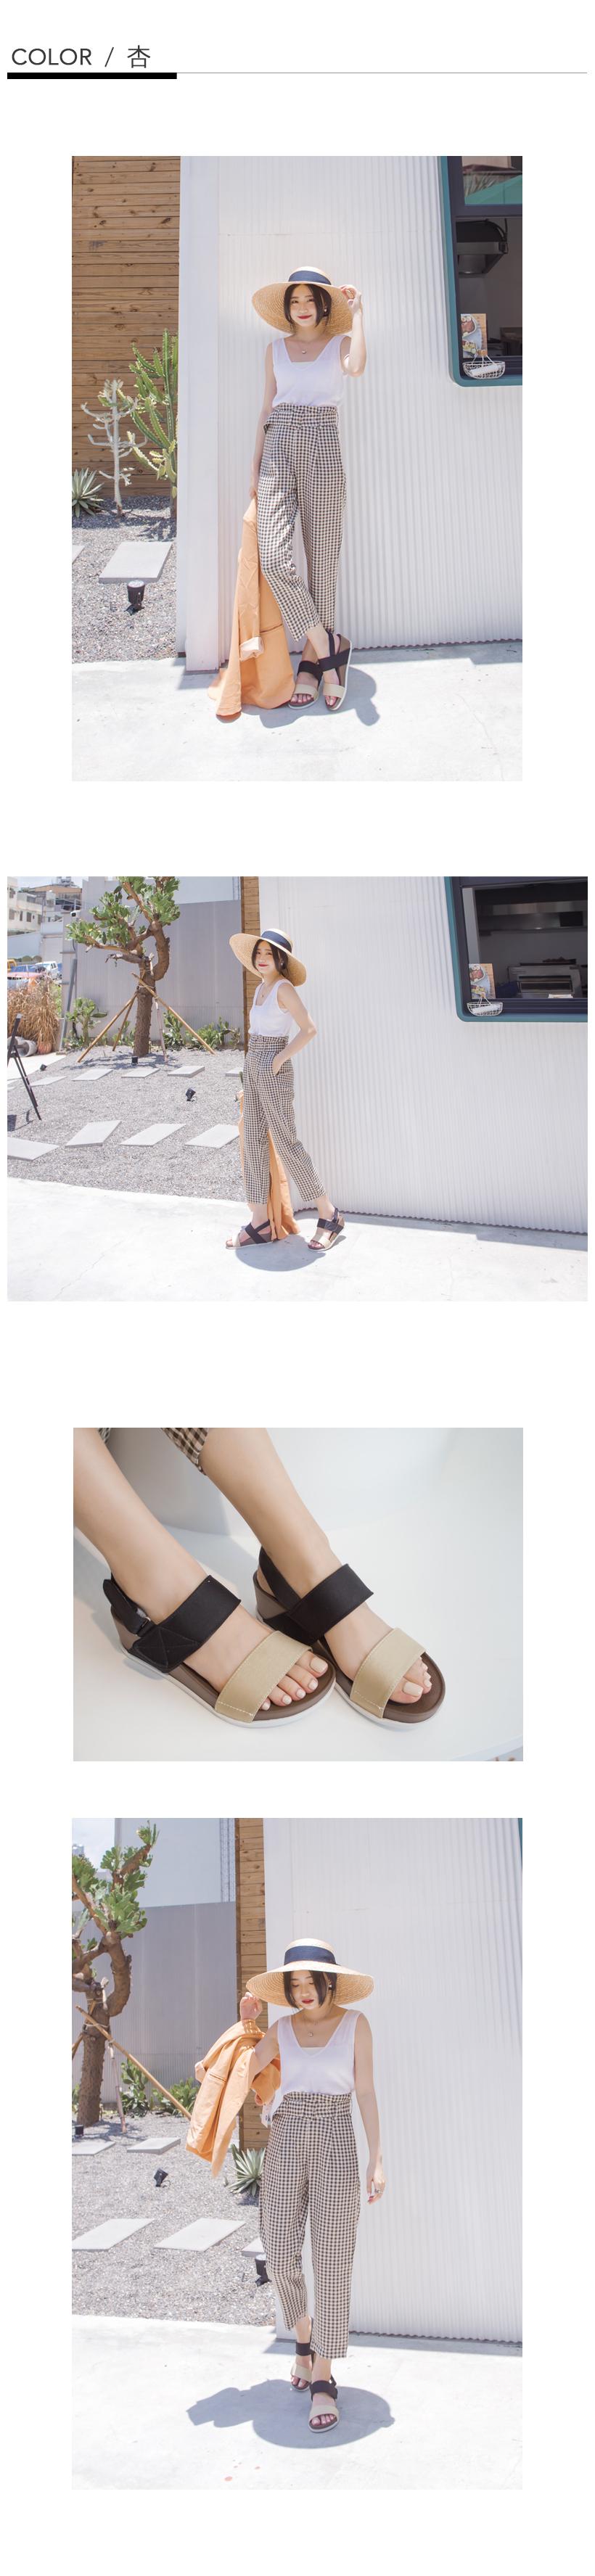 訂製款 防潑水一字撞色楔型涼鞋 杏 大尺碼 Fmshoes女鞋購物網站